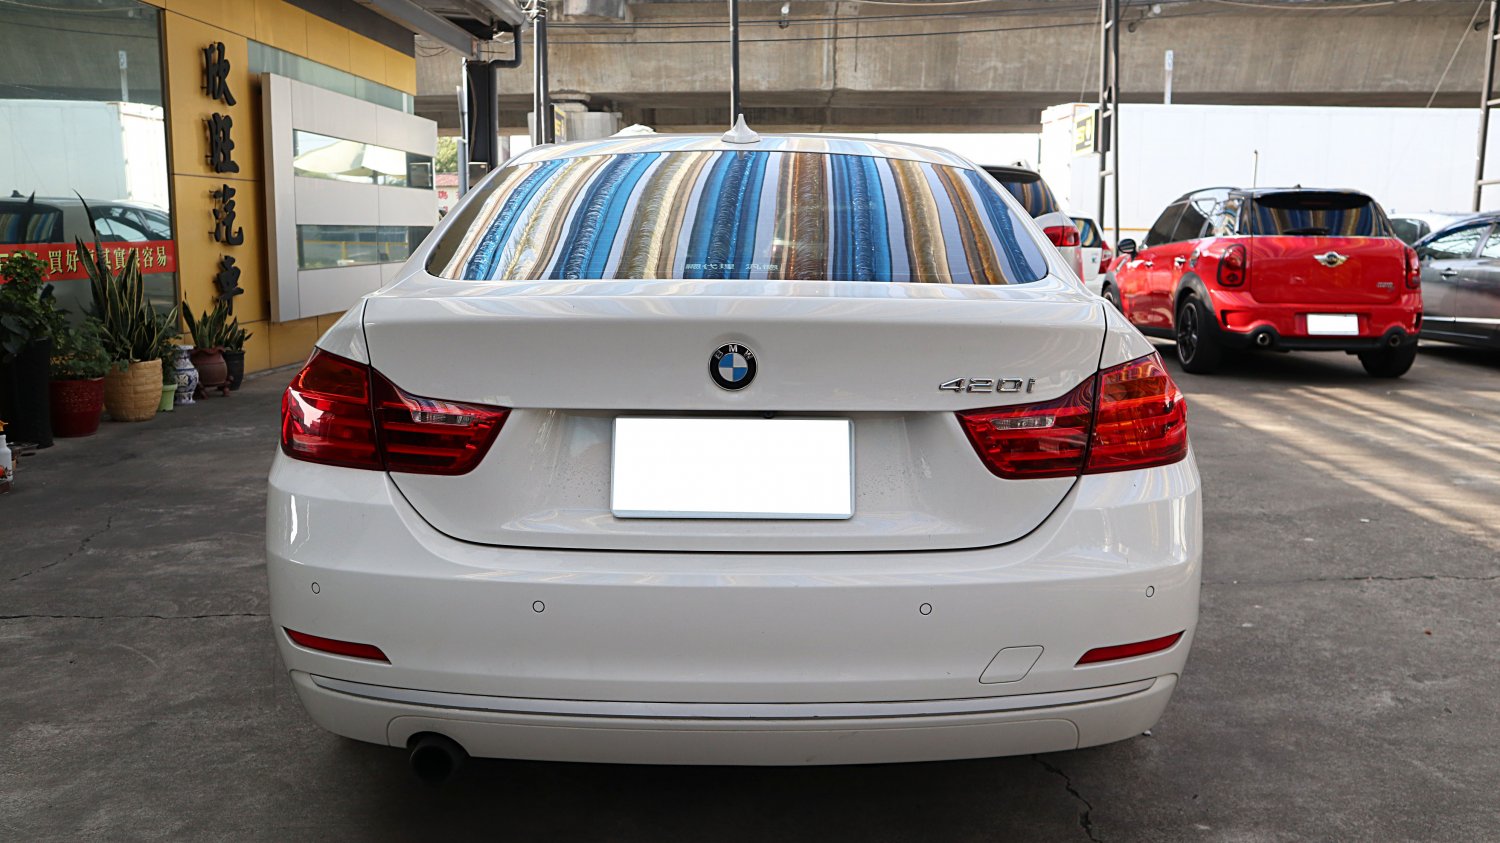 Bmw 寶馬 ／ 4-Series ／ 2015年 ／ 2015年 BMW 420i gran coupe 白色 寶馬中古車 ／ 九州欣旺汽車 (台南)